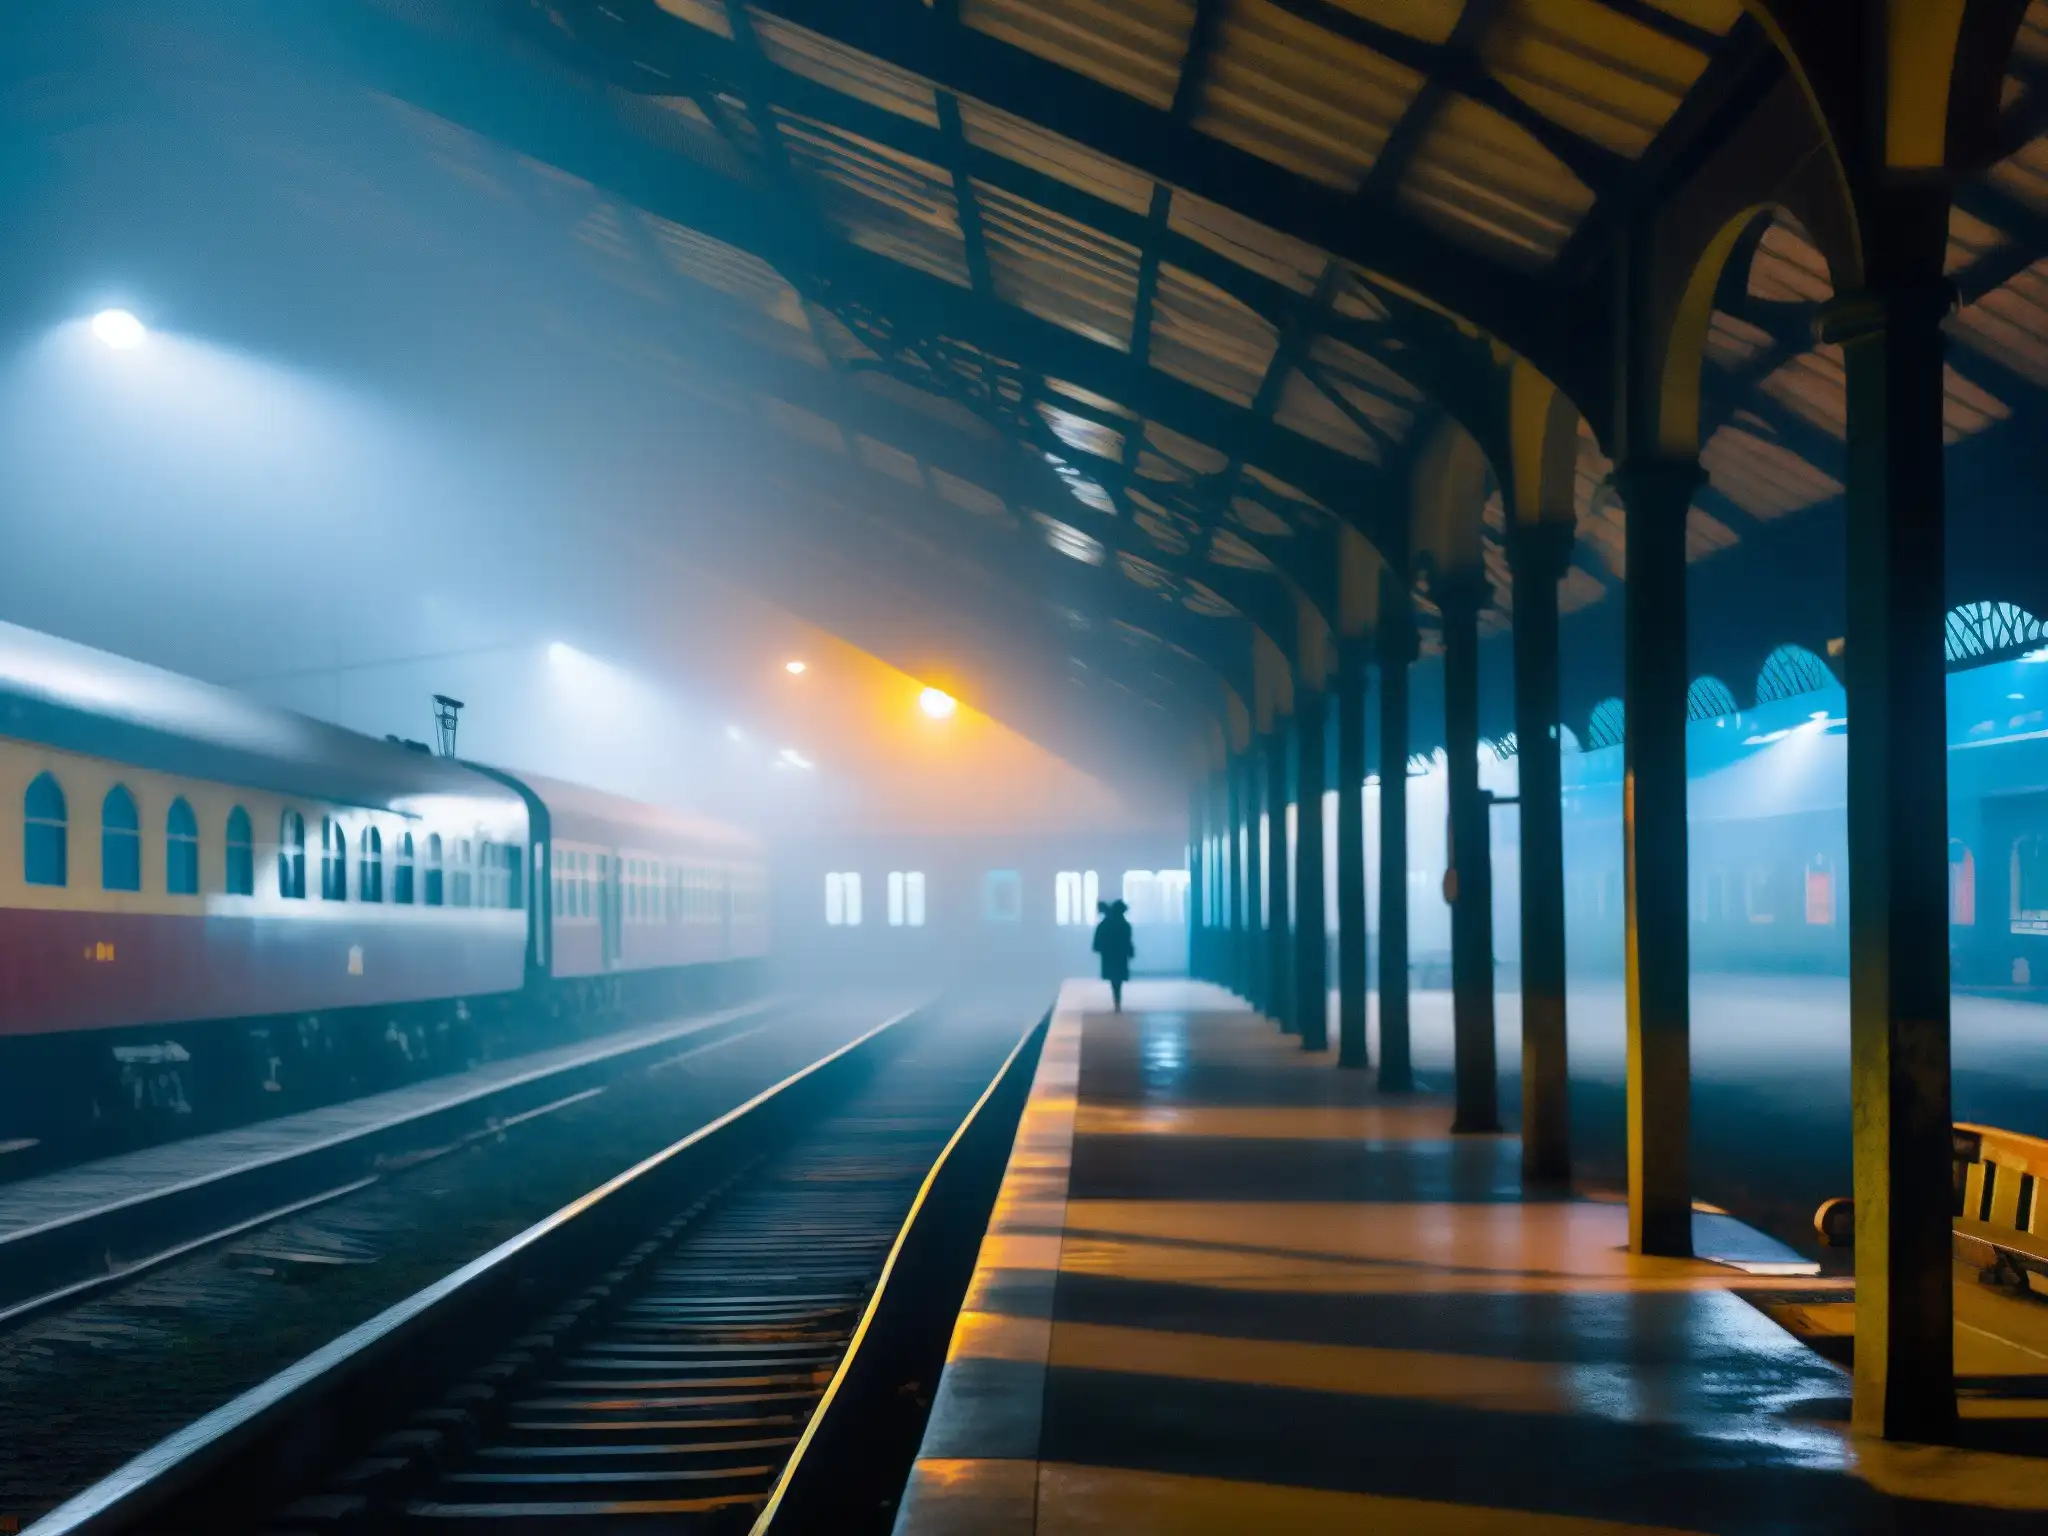 Un tren abandonado bajo la luz de la luna en la estación de tren de Howrah, creando una atmósfera misteriosa y fantasmal